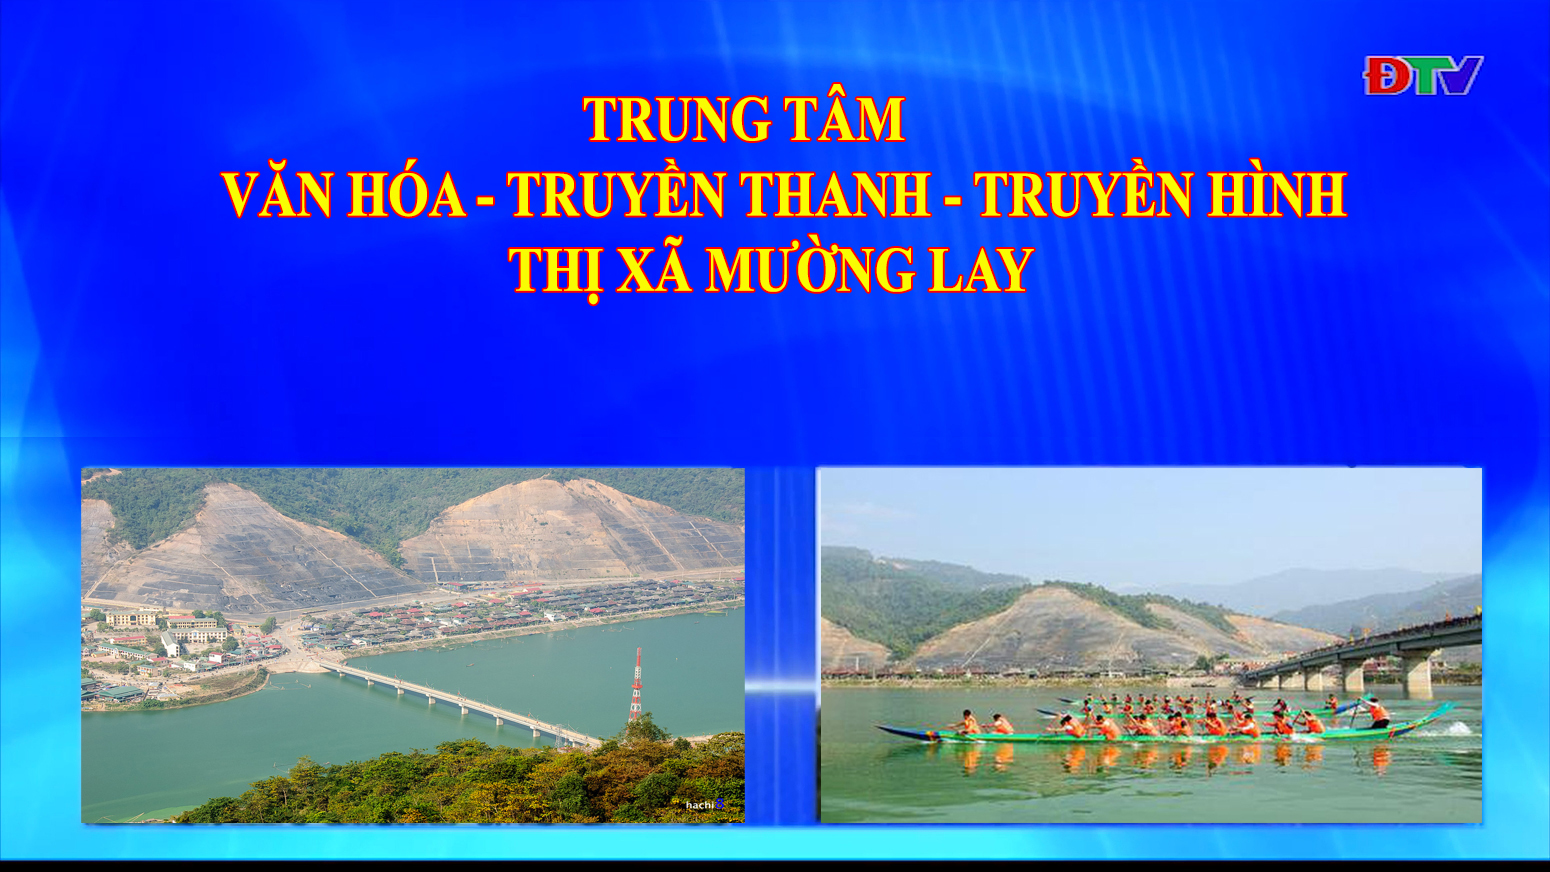 Trung tâm VH-TTTH thị xã Mường Lay (Ngày 9-7-2021)